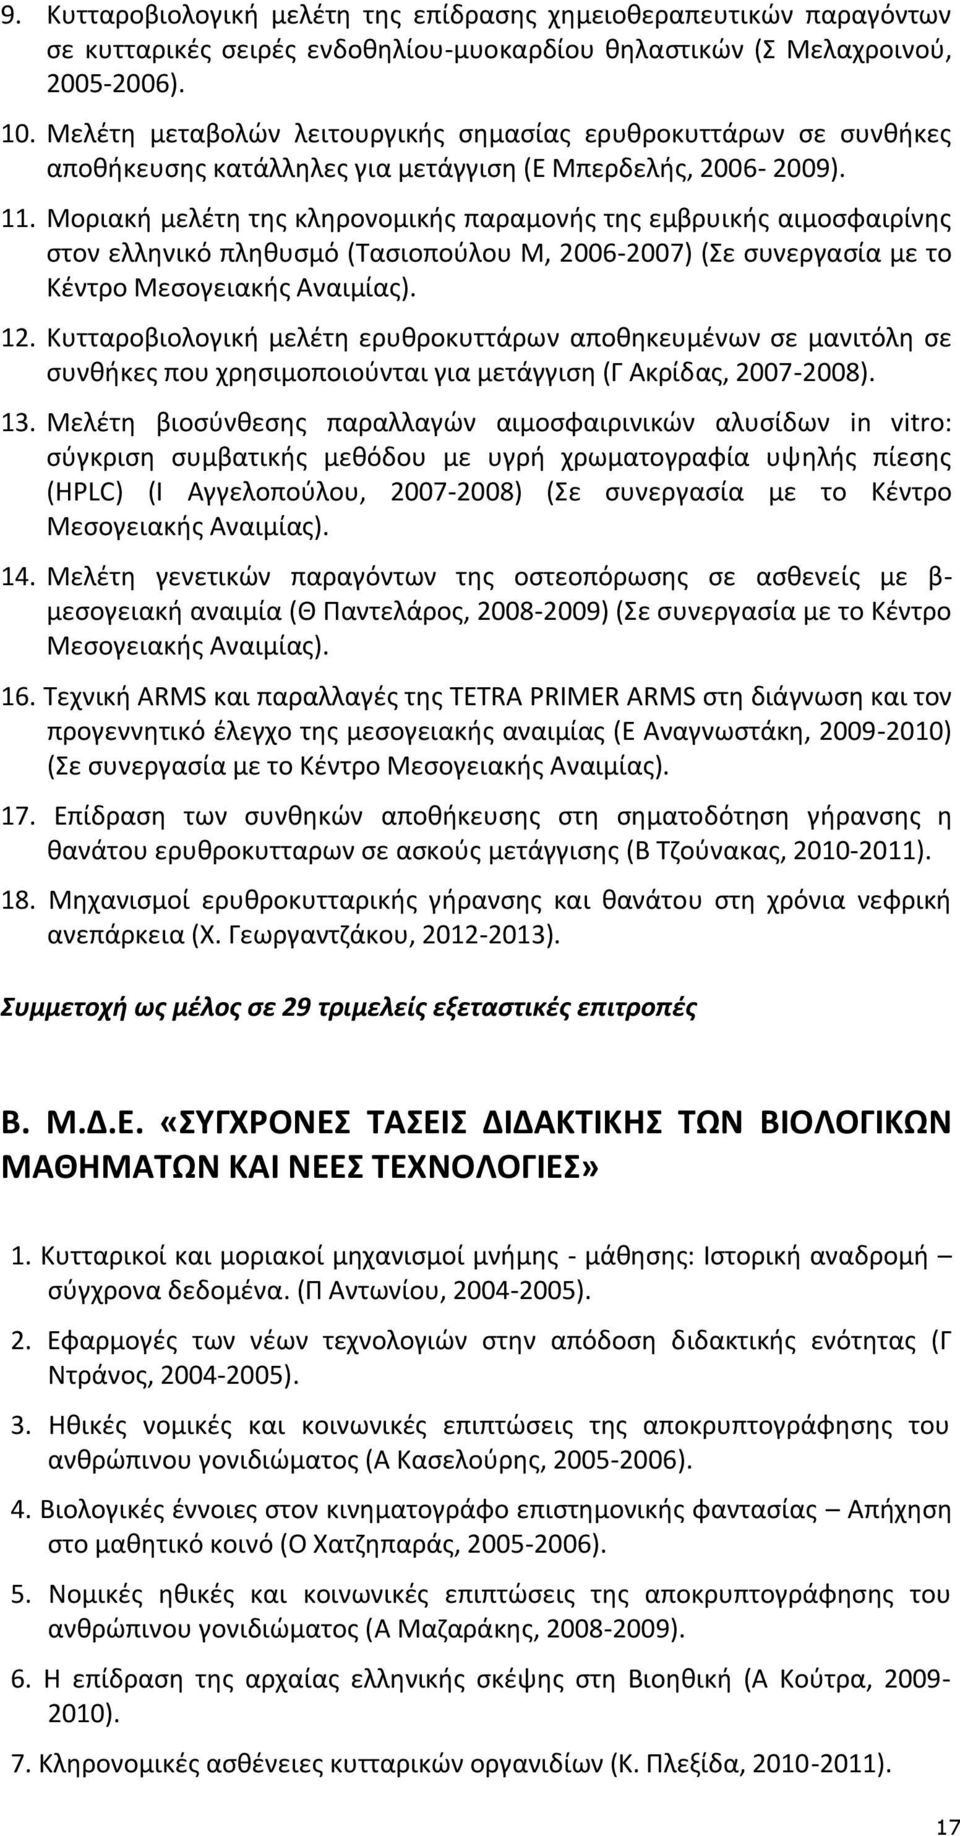 Μοριακή μελέτη της κληρονομικής παραμονής της εμβρυικής αιμοσφαιρίνης στον ελληνικό πληθυσμό (Τασιοπούλου Μ, 2006-2007) (Σε συνεργασία με το Κέντρο Μεσογειακής Αναιμίας). 12.